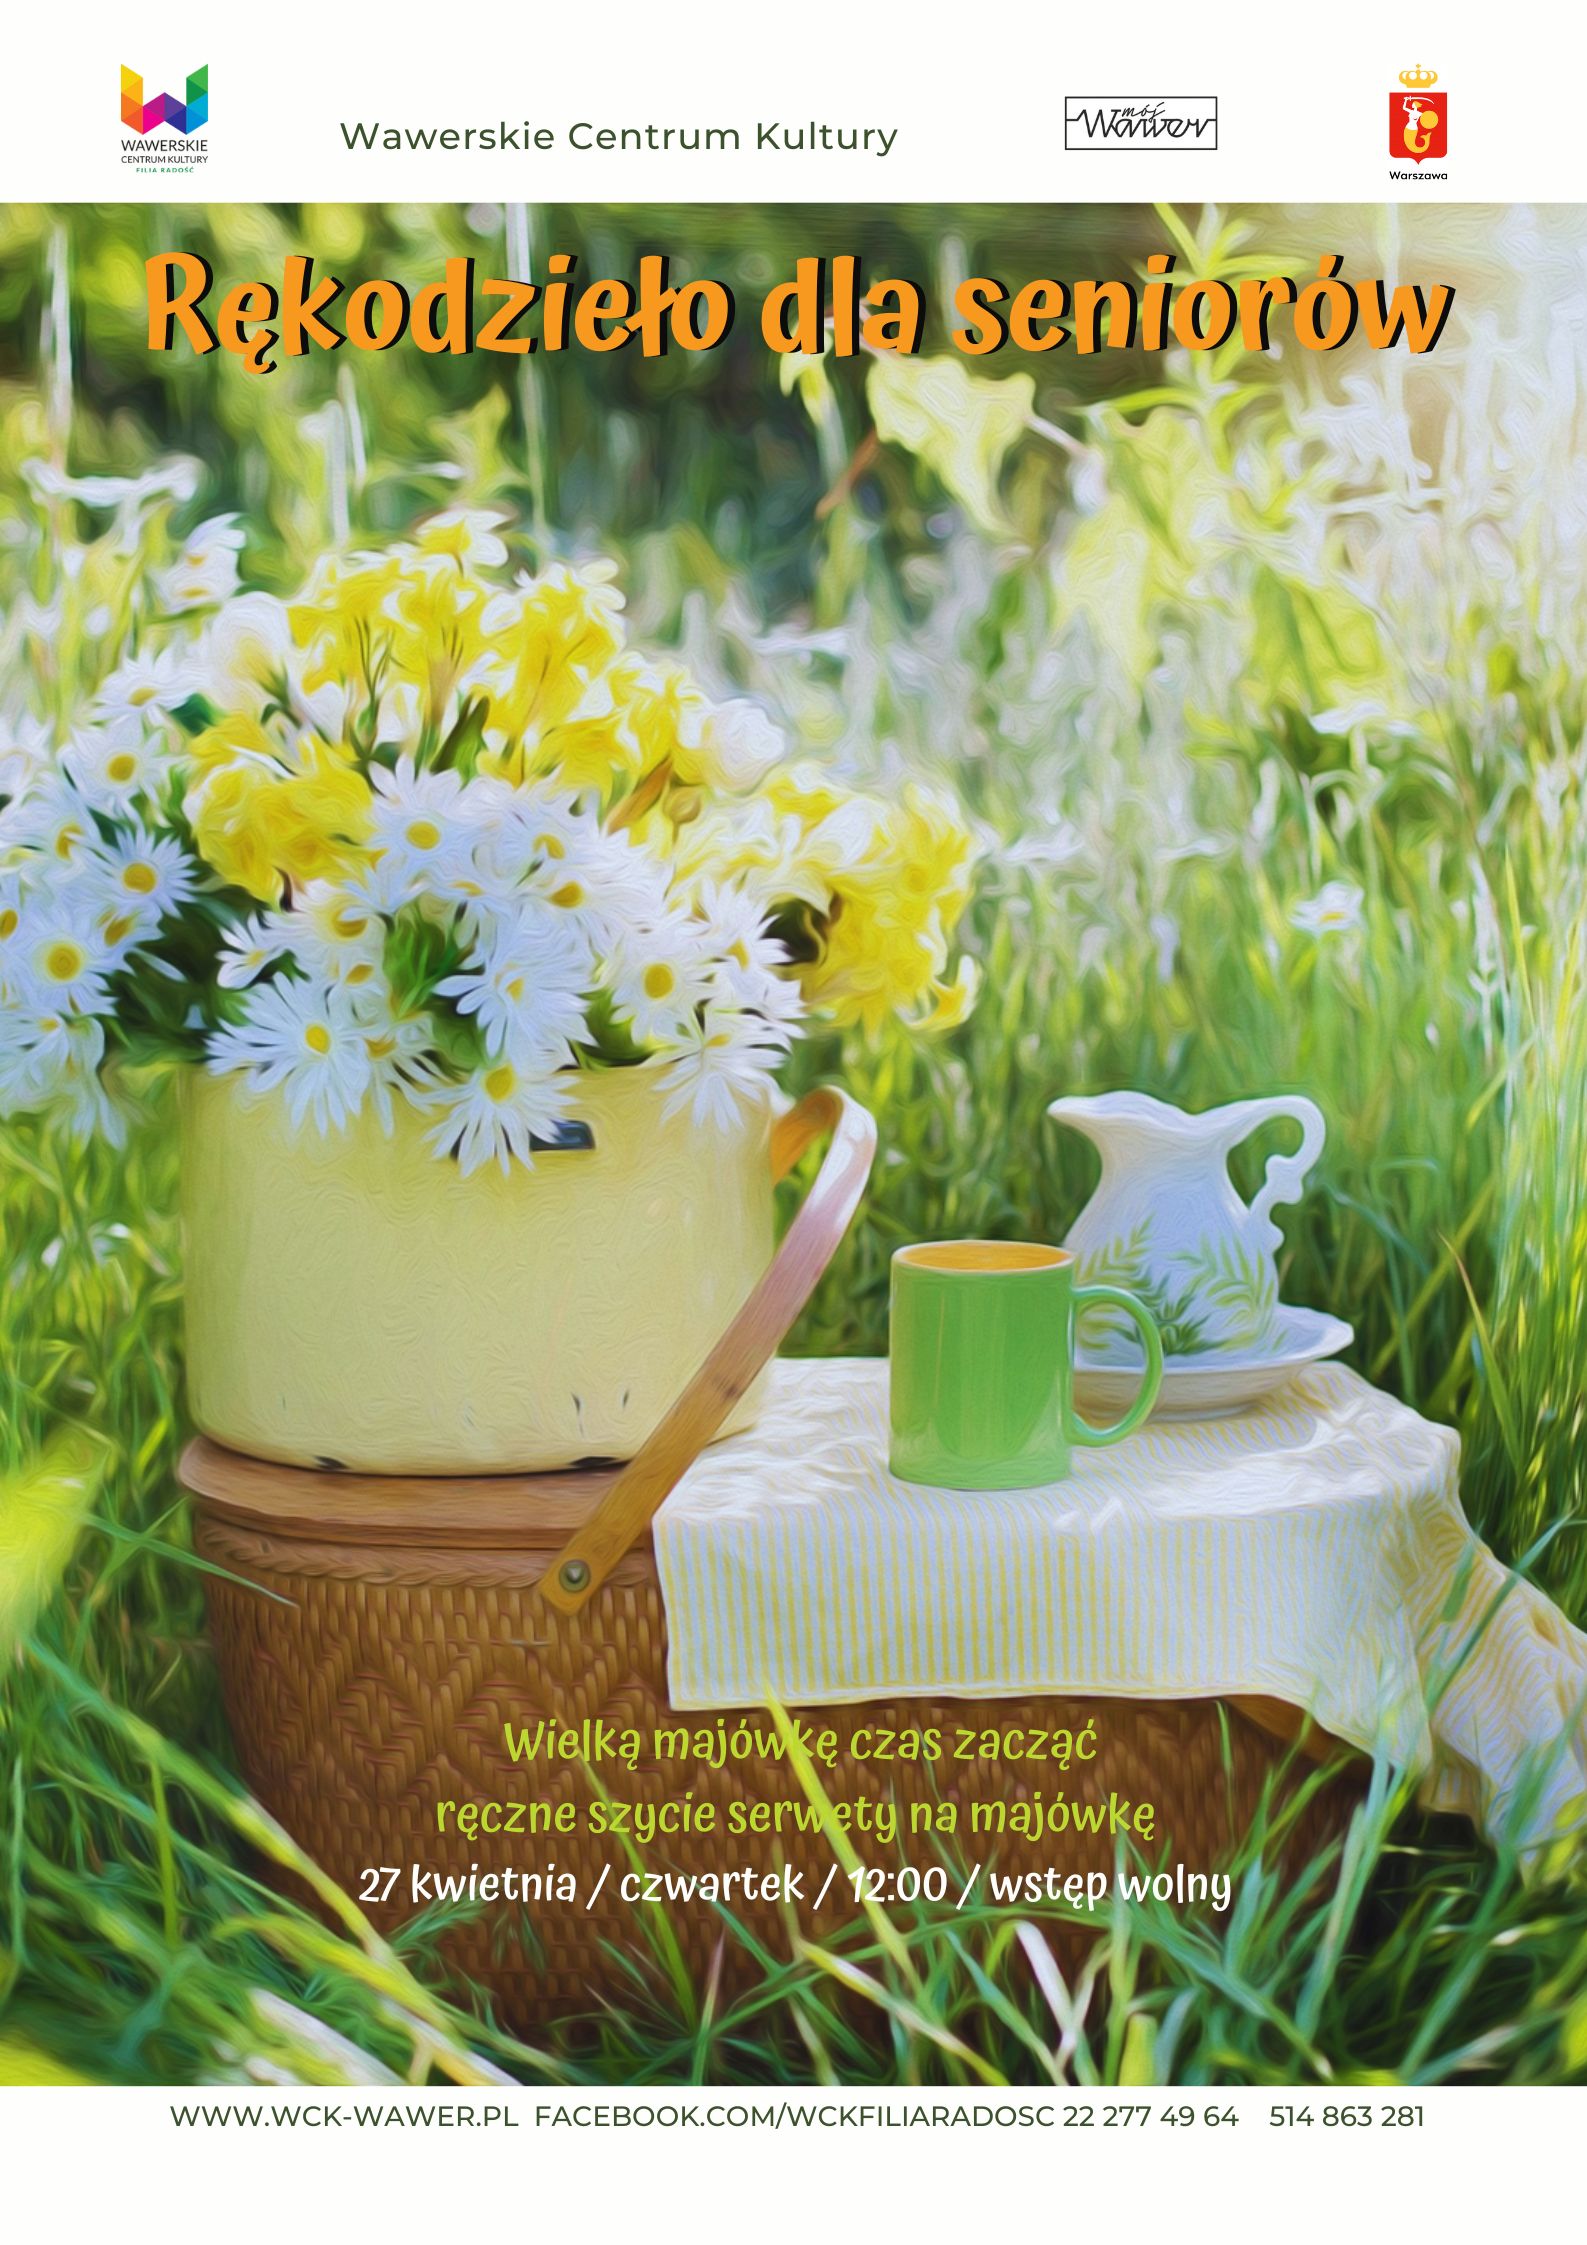 mały stolik w trawie, z dzbankiem i kubkiem oraz wazonem pełnym żółtych kwiatów